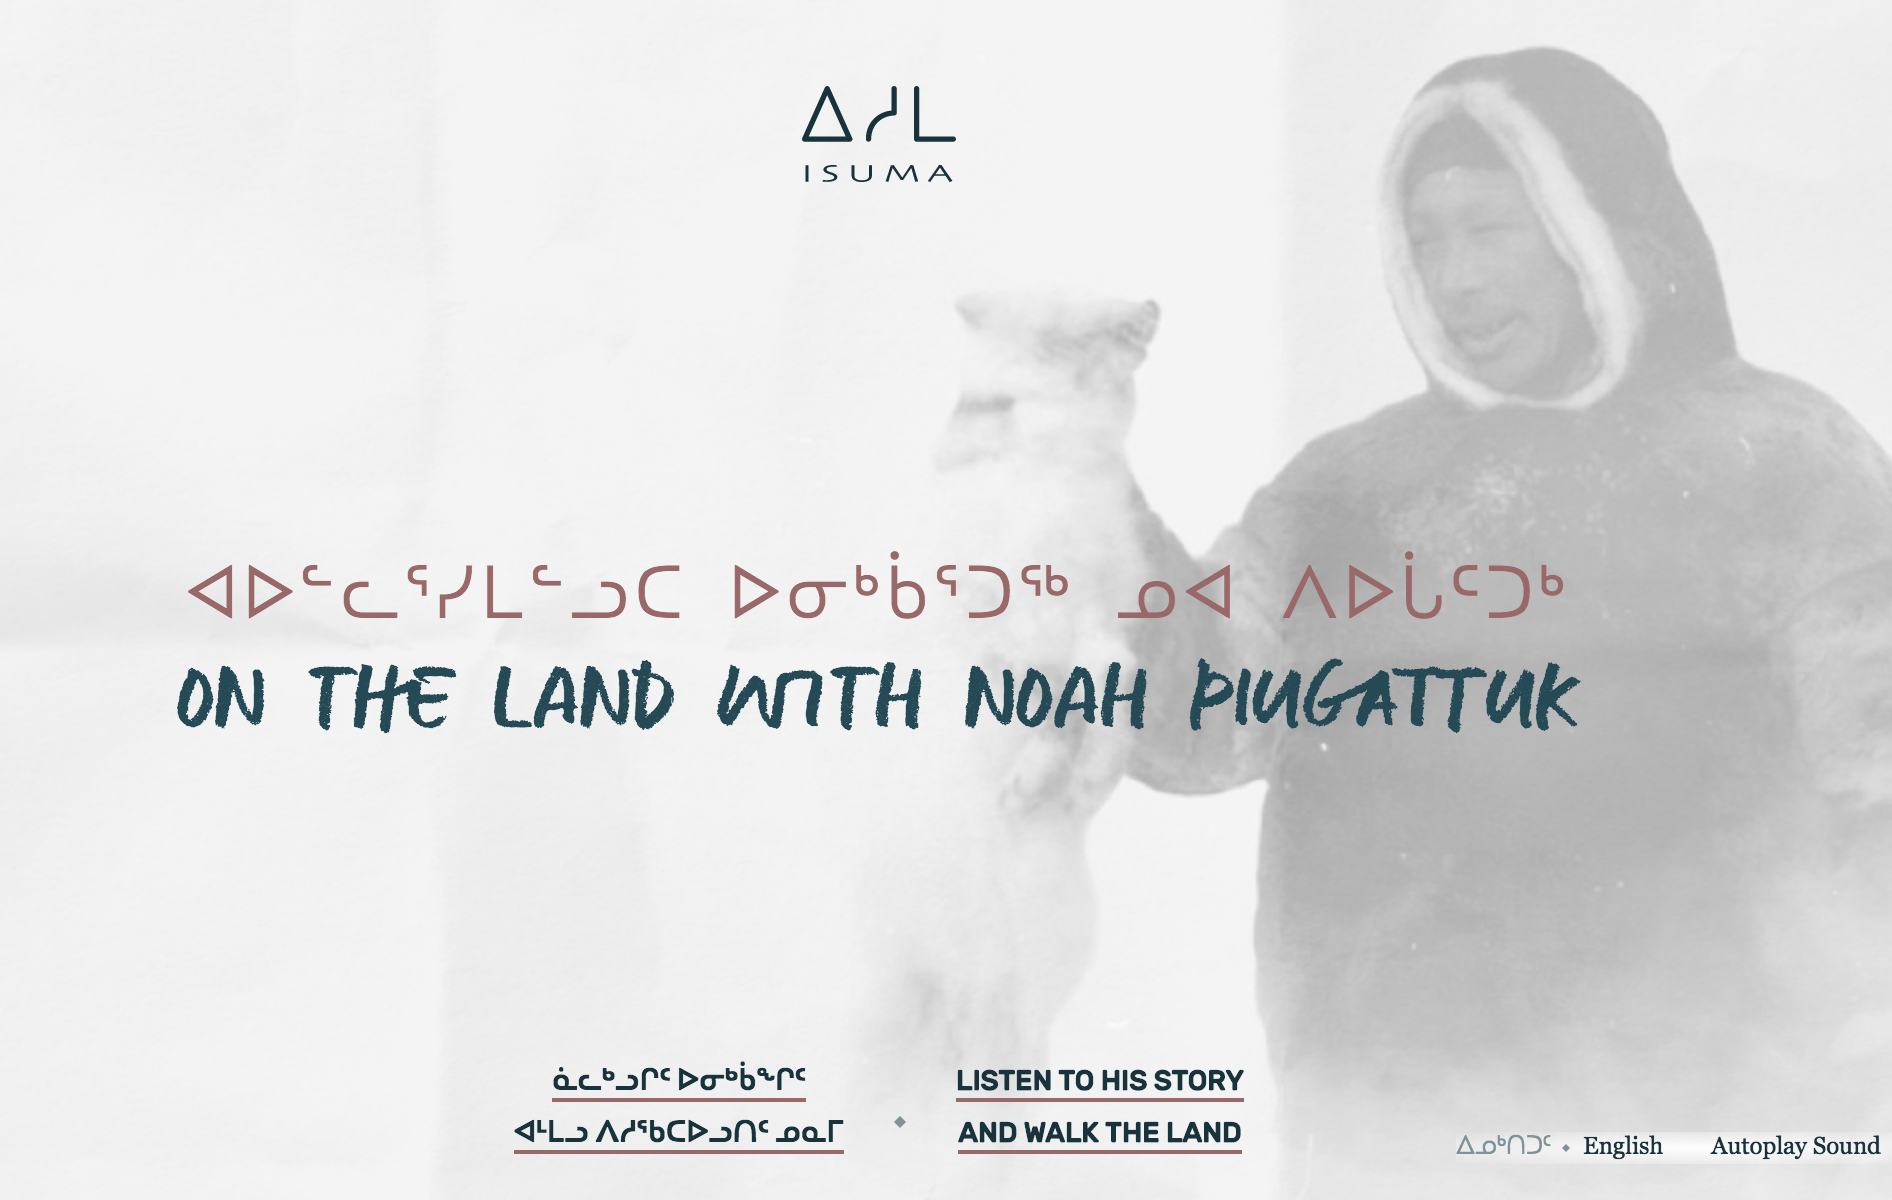 On the Land with Noah Piugattuk - Interactive Story Map